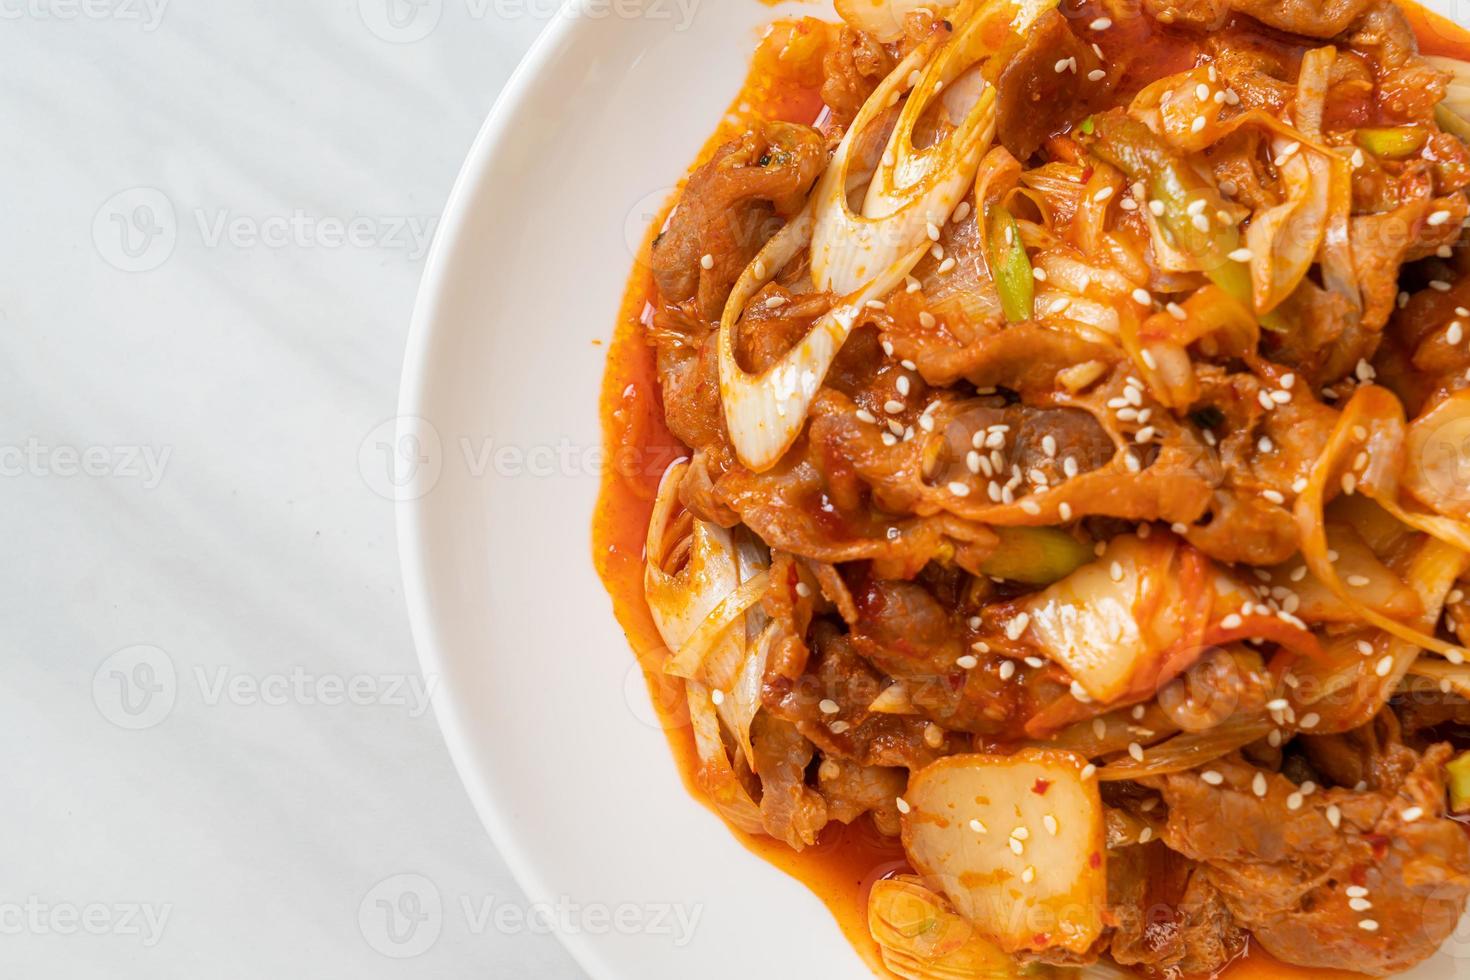 roergebakken varkensvlees met Koreaanse pittige pasta en kimchi - Koreaanse voedselstijl foto